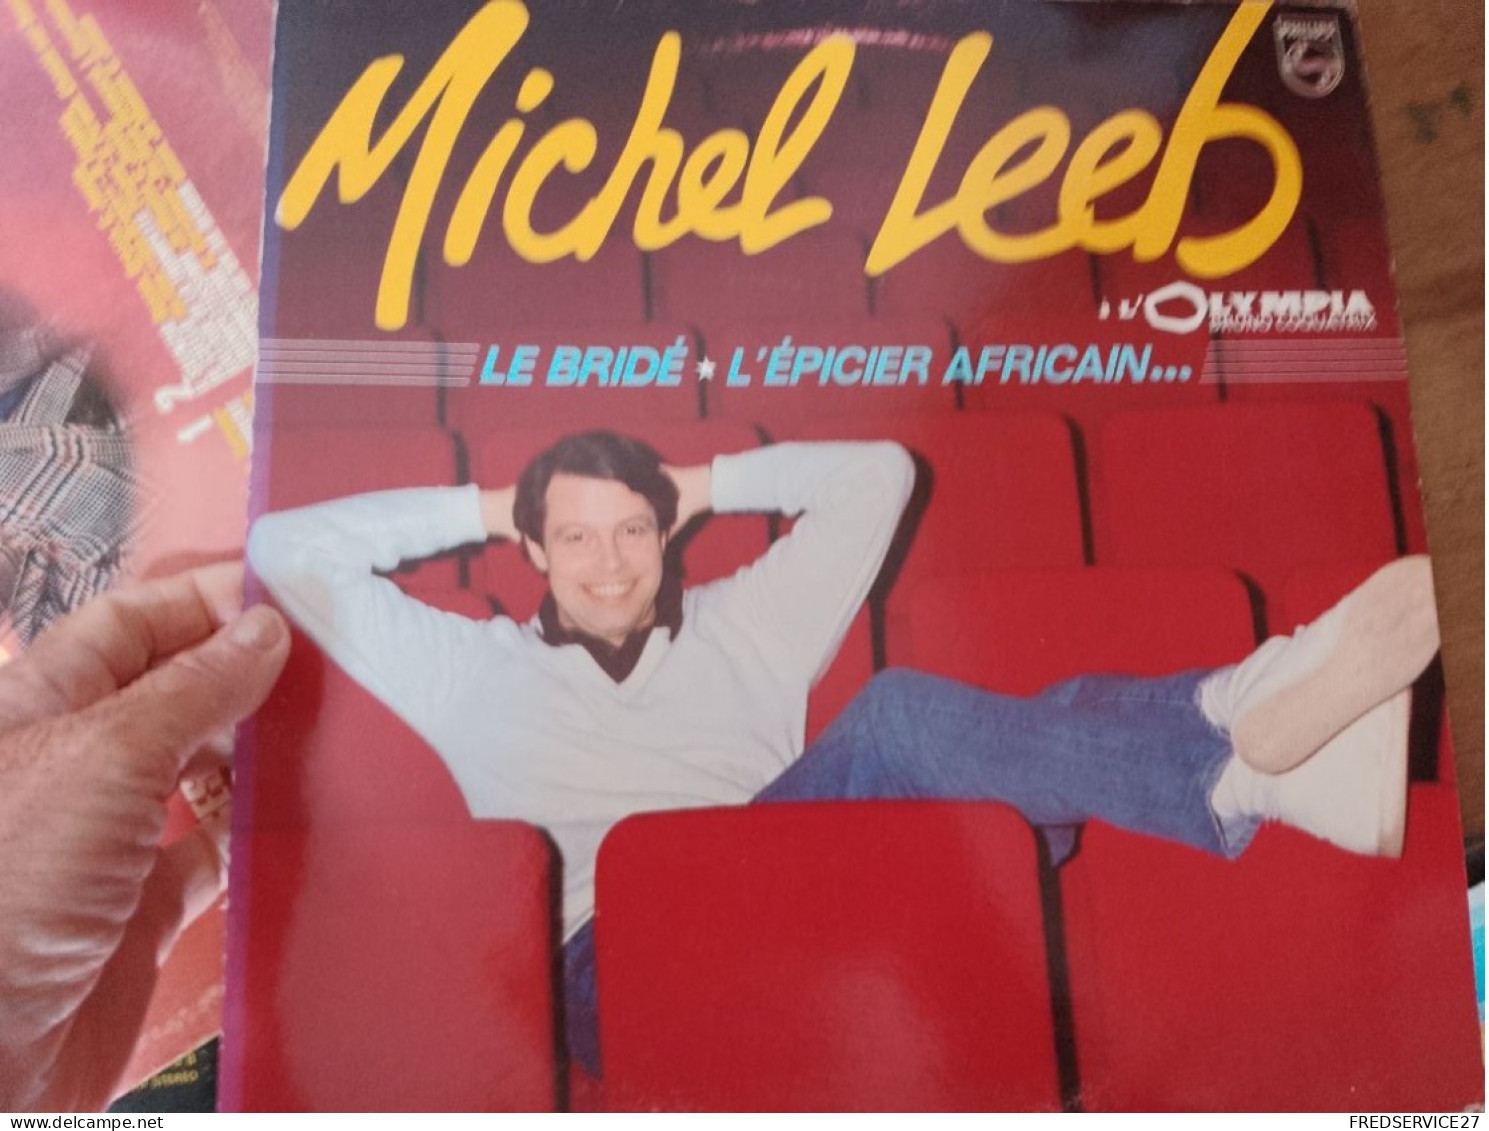 89 //  MICHEL LEEB A L'OLYMPIA / LE BRIDE / L'EPICIER AFRICAIN..... - Humour, Cabaret